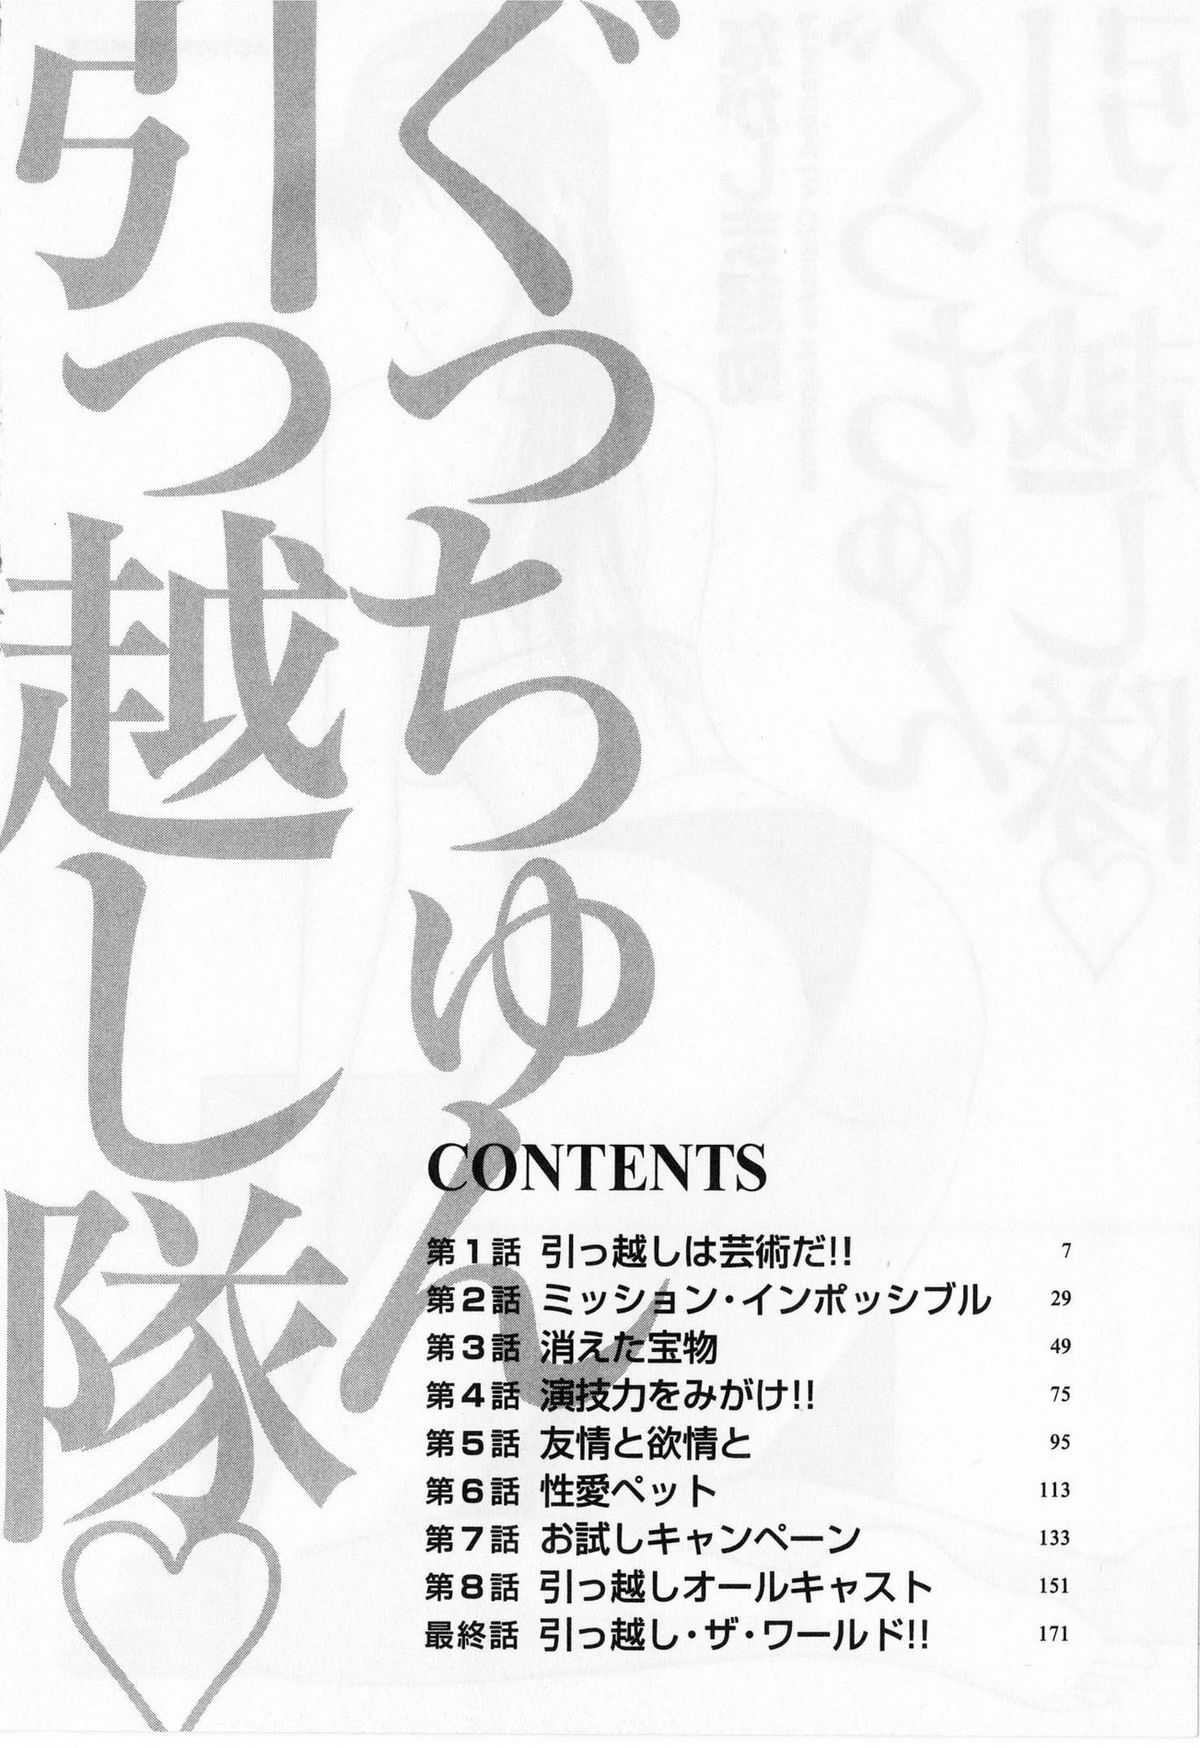 [Nagashima Chosuke] Gucchun Hikkoshitai [ながしま超助] ぐっちゅん引っ越し隊 [2010-06-28]